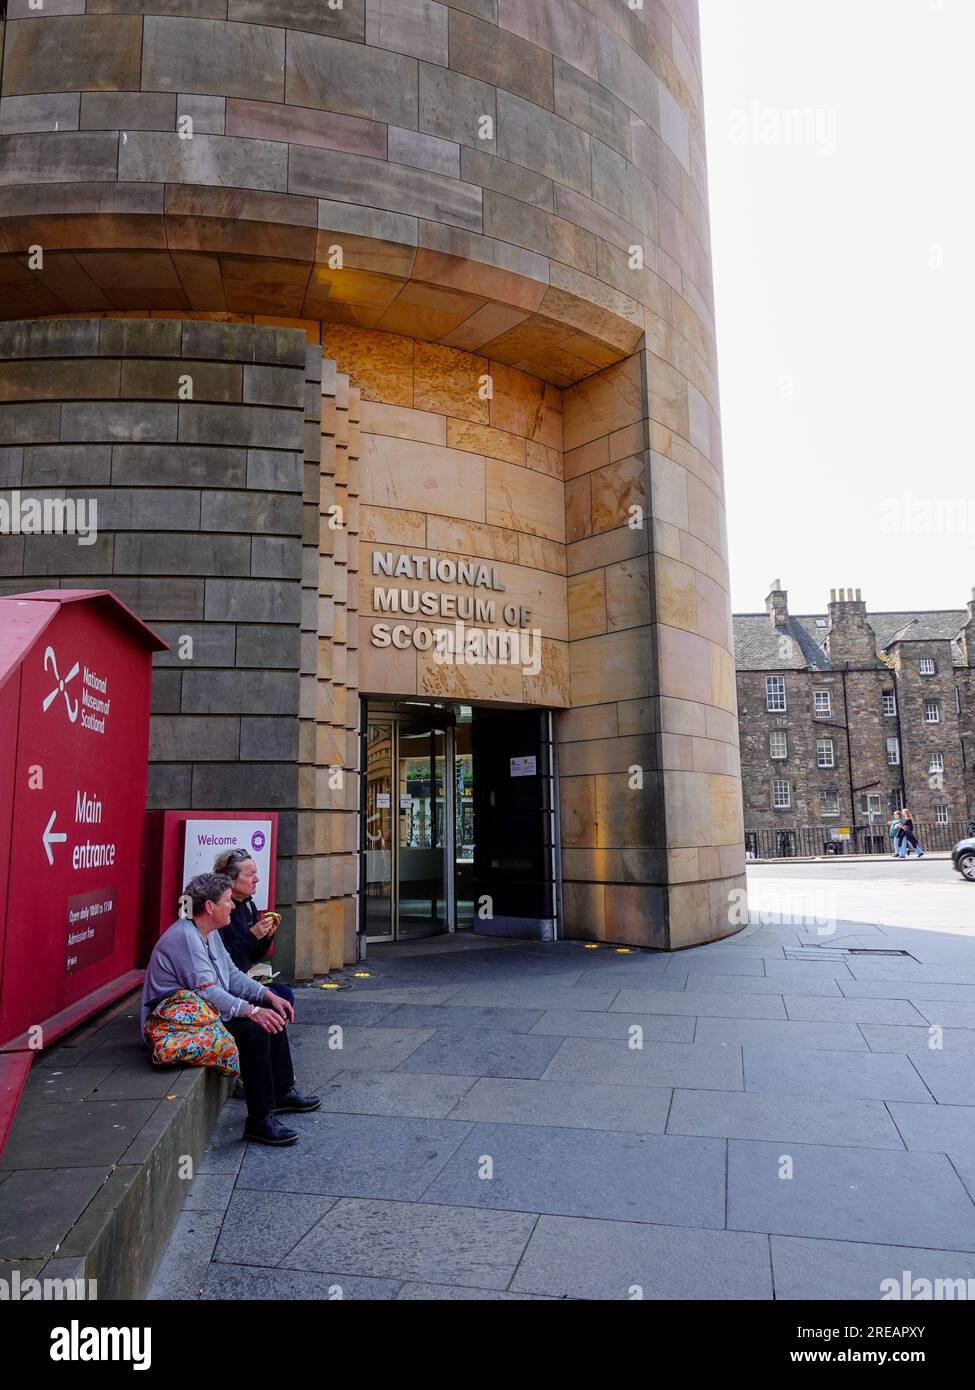 Persone fuori dal National Museum of Scotland, museo gratuito con mostre storiche e culturali, situato in Chambers St, Edimburgo, Scozia, Regno Unito. Foto Stock